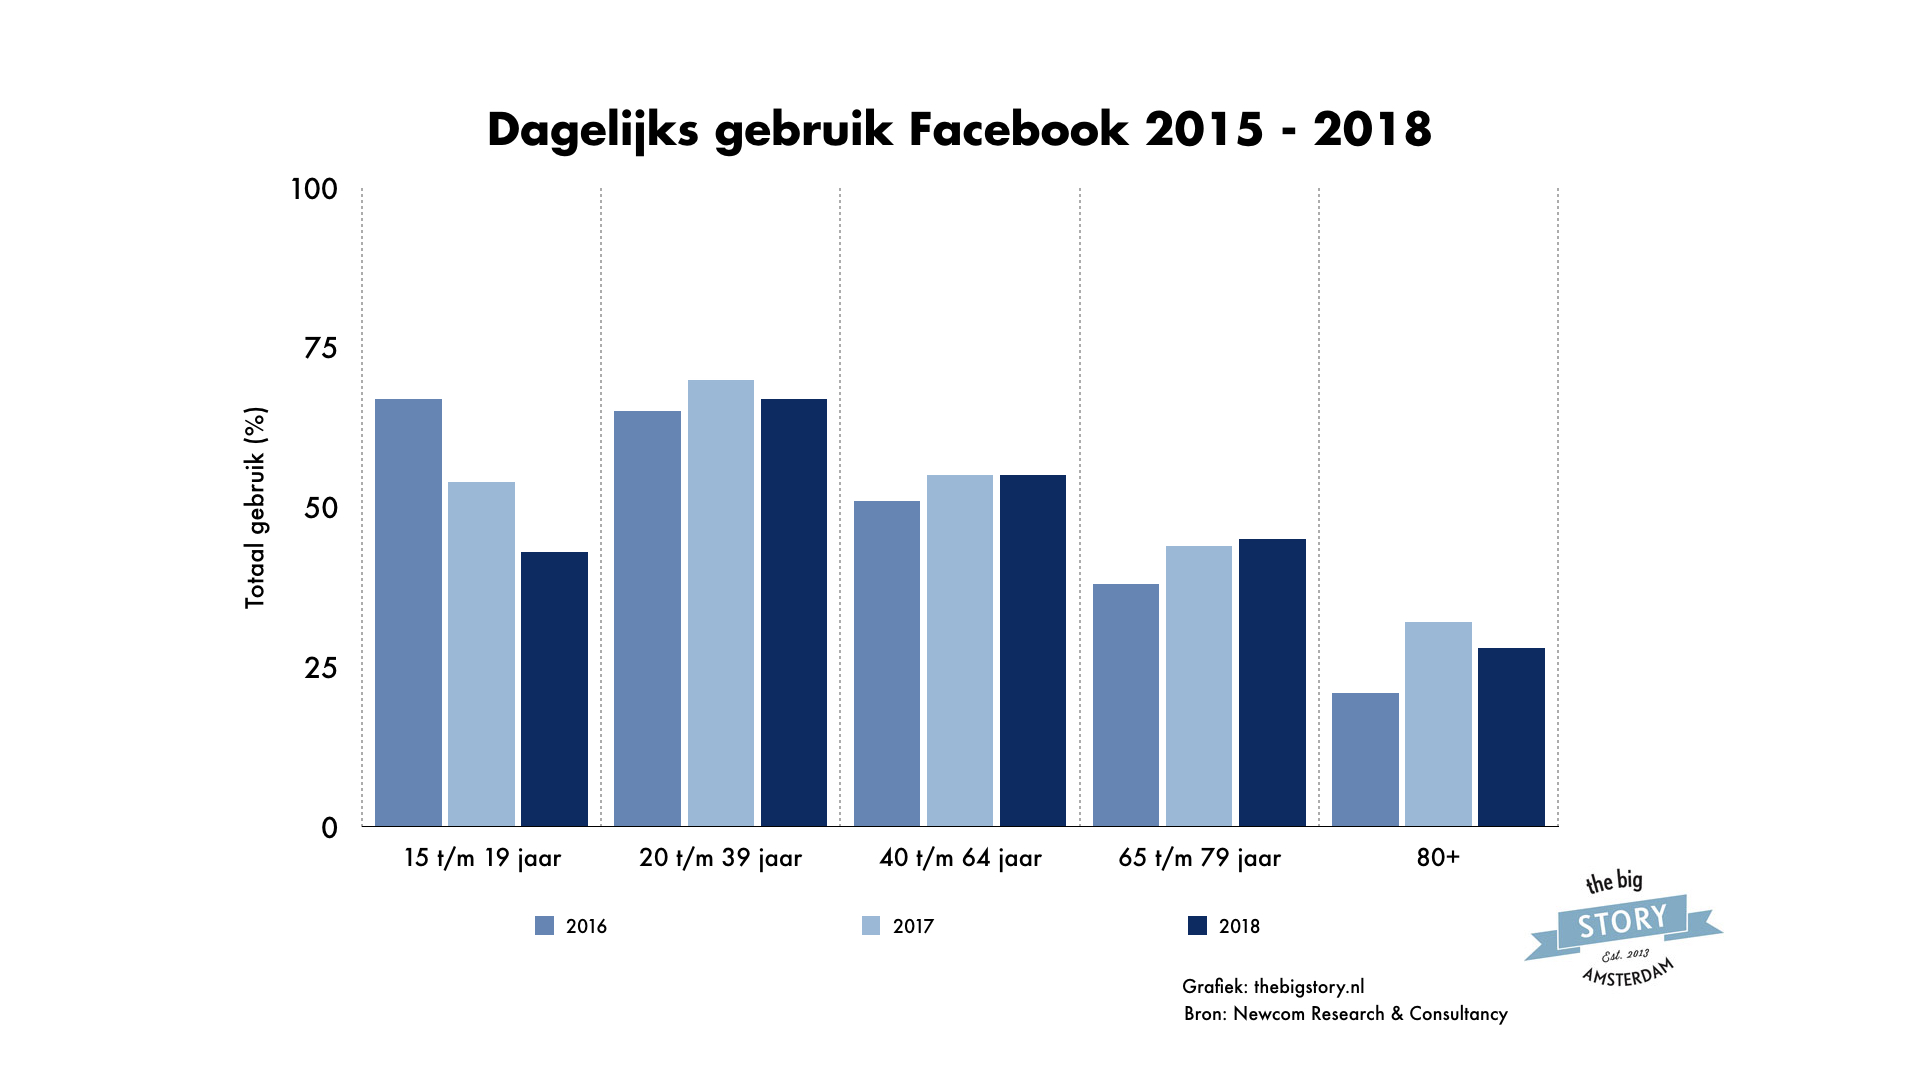 Dagelijks gebruik Facebook in Nederland 2018